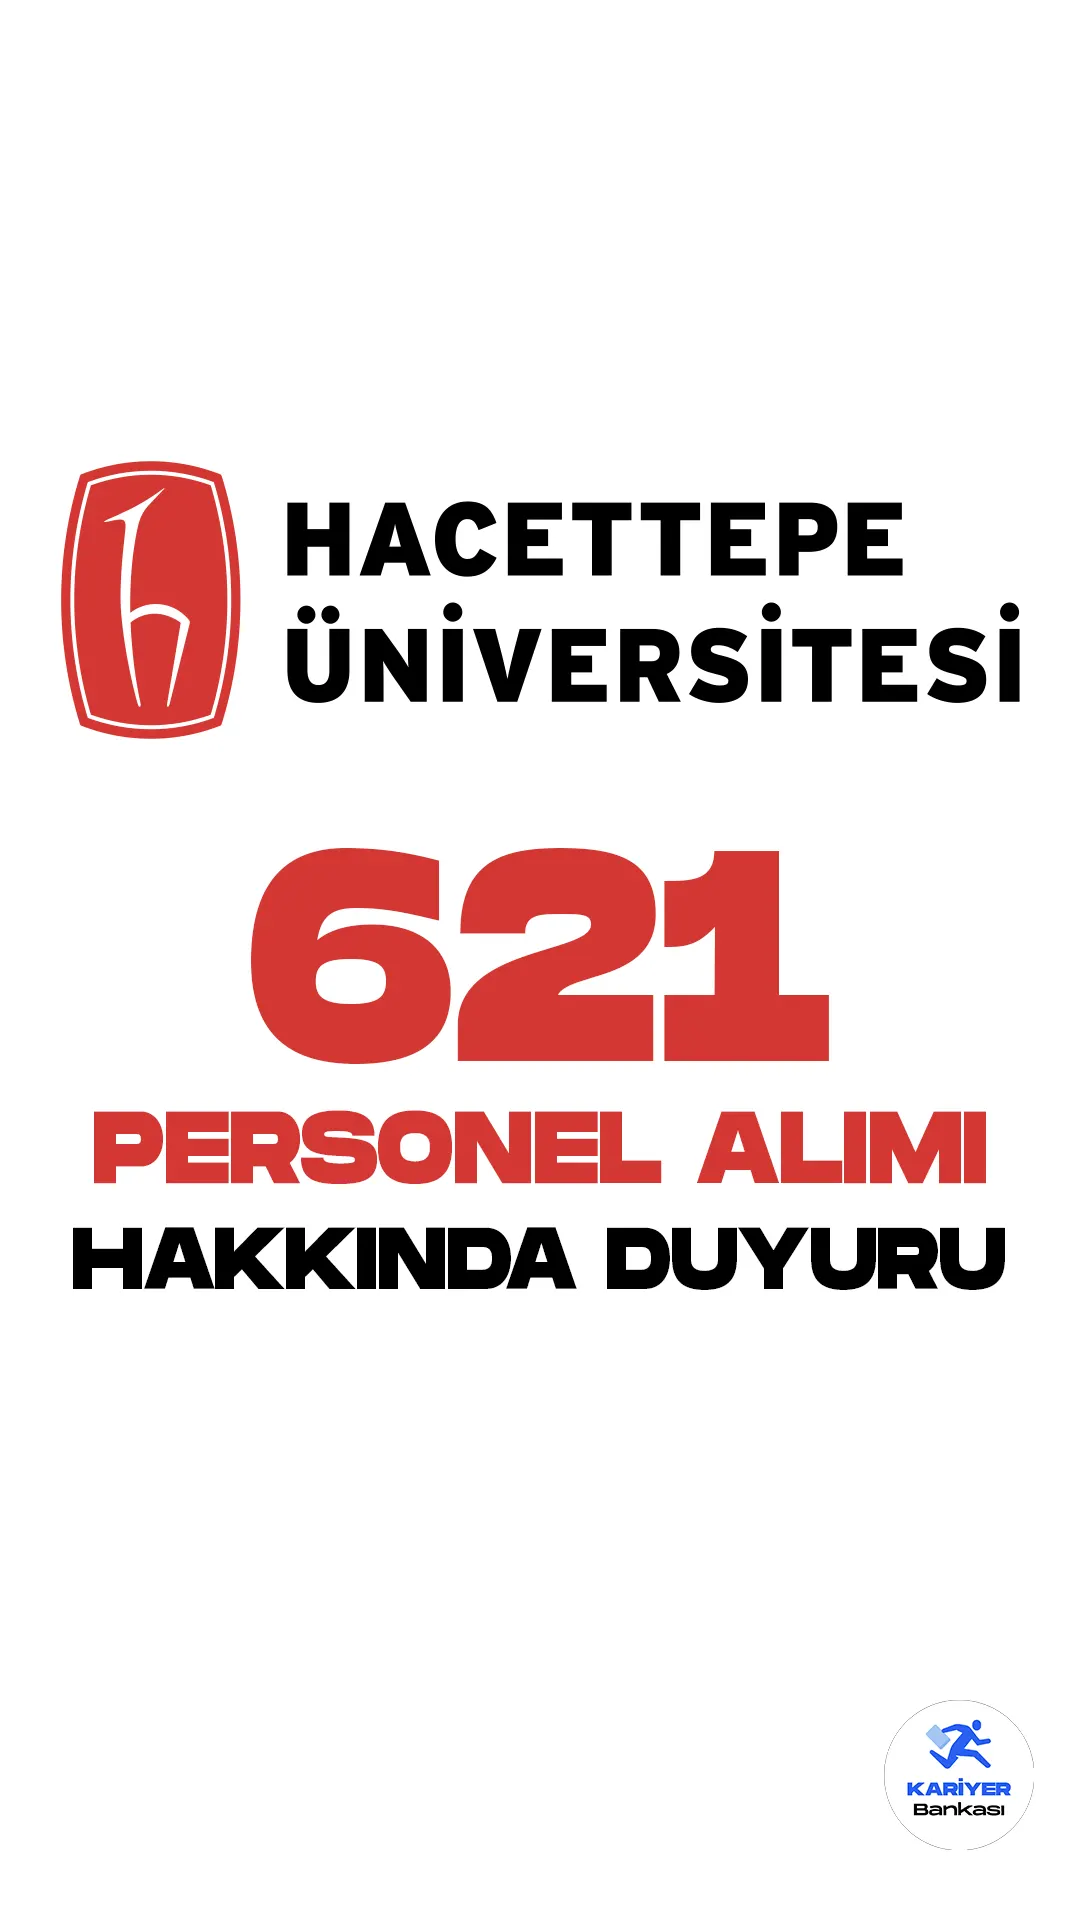 Hacettepe Üniversitesi personel alımı sonuçları açıklandı. Hacettepe Üniversitesi resmi sayfasından yayımlanan duyuruya göre, 5 Nisan-19 Nisan 2023 tarihleri arasında başvuruları alınan 657 / 4-B kapsamında 621 sözleşmeli personel alımı sonuçlarının açıkladığı aktarıldı. Başvuru yapan adayların sonuçlarına https://pdb.hacettepe.edu.tr adresi üzerinden ulaşabilecekleri kaydedildi.